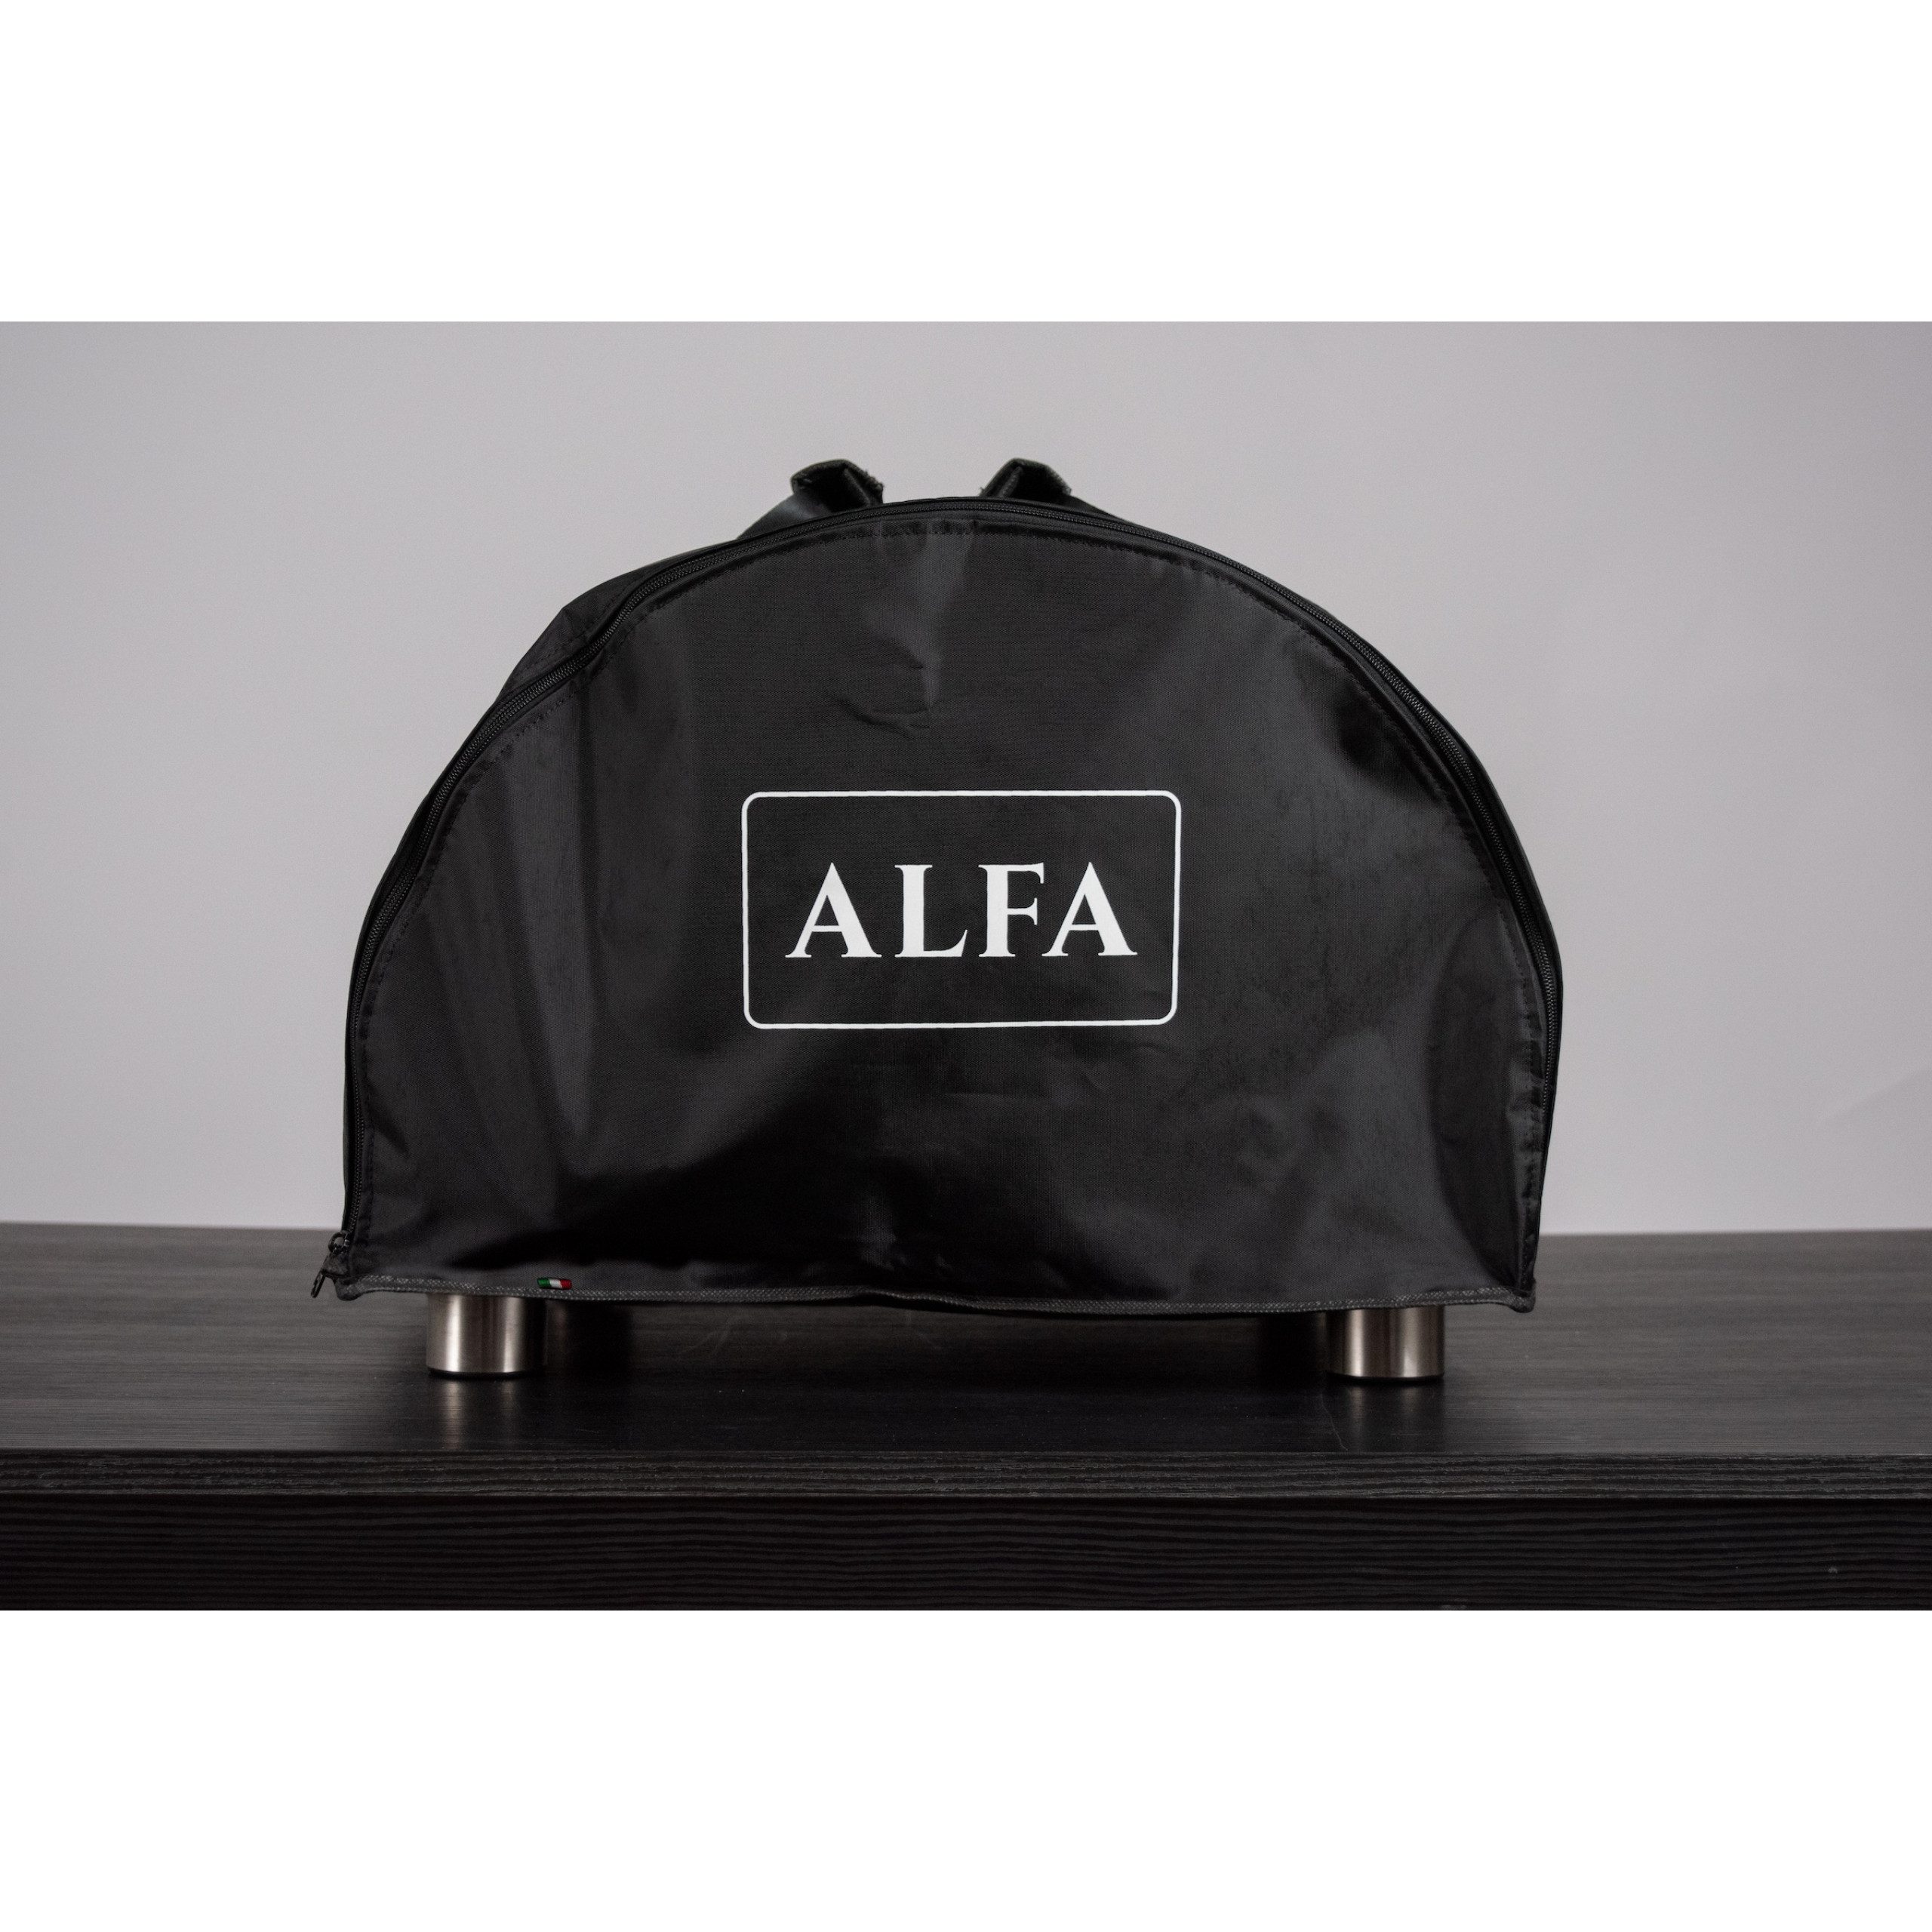 Alfa Forni Pizzaofen Alfa Forni Tragbare Transporttasche Portable Cover / Travel Case für